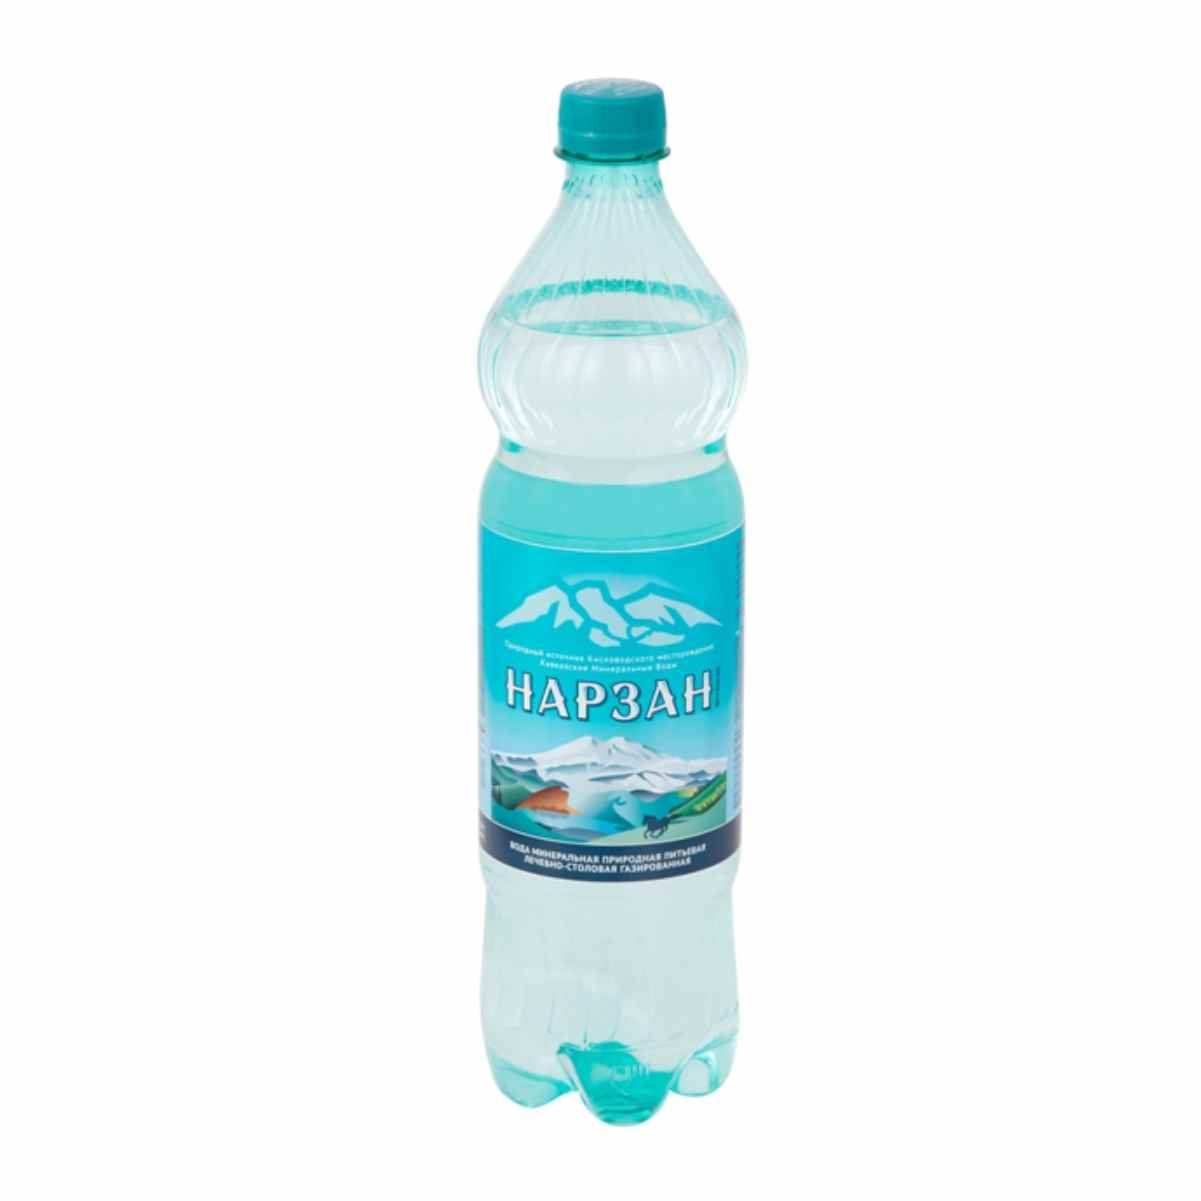 Бутылка нарзана. Нарзан 0,5 ПЭТ. Холдинг Аква Минеральные воды. Нарзан Холдинг Аква. Вода минеральная Нарзан 0.5 ПЭТ.